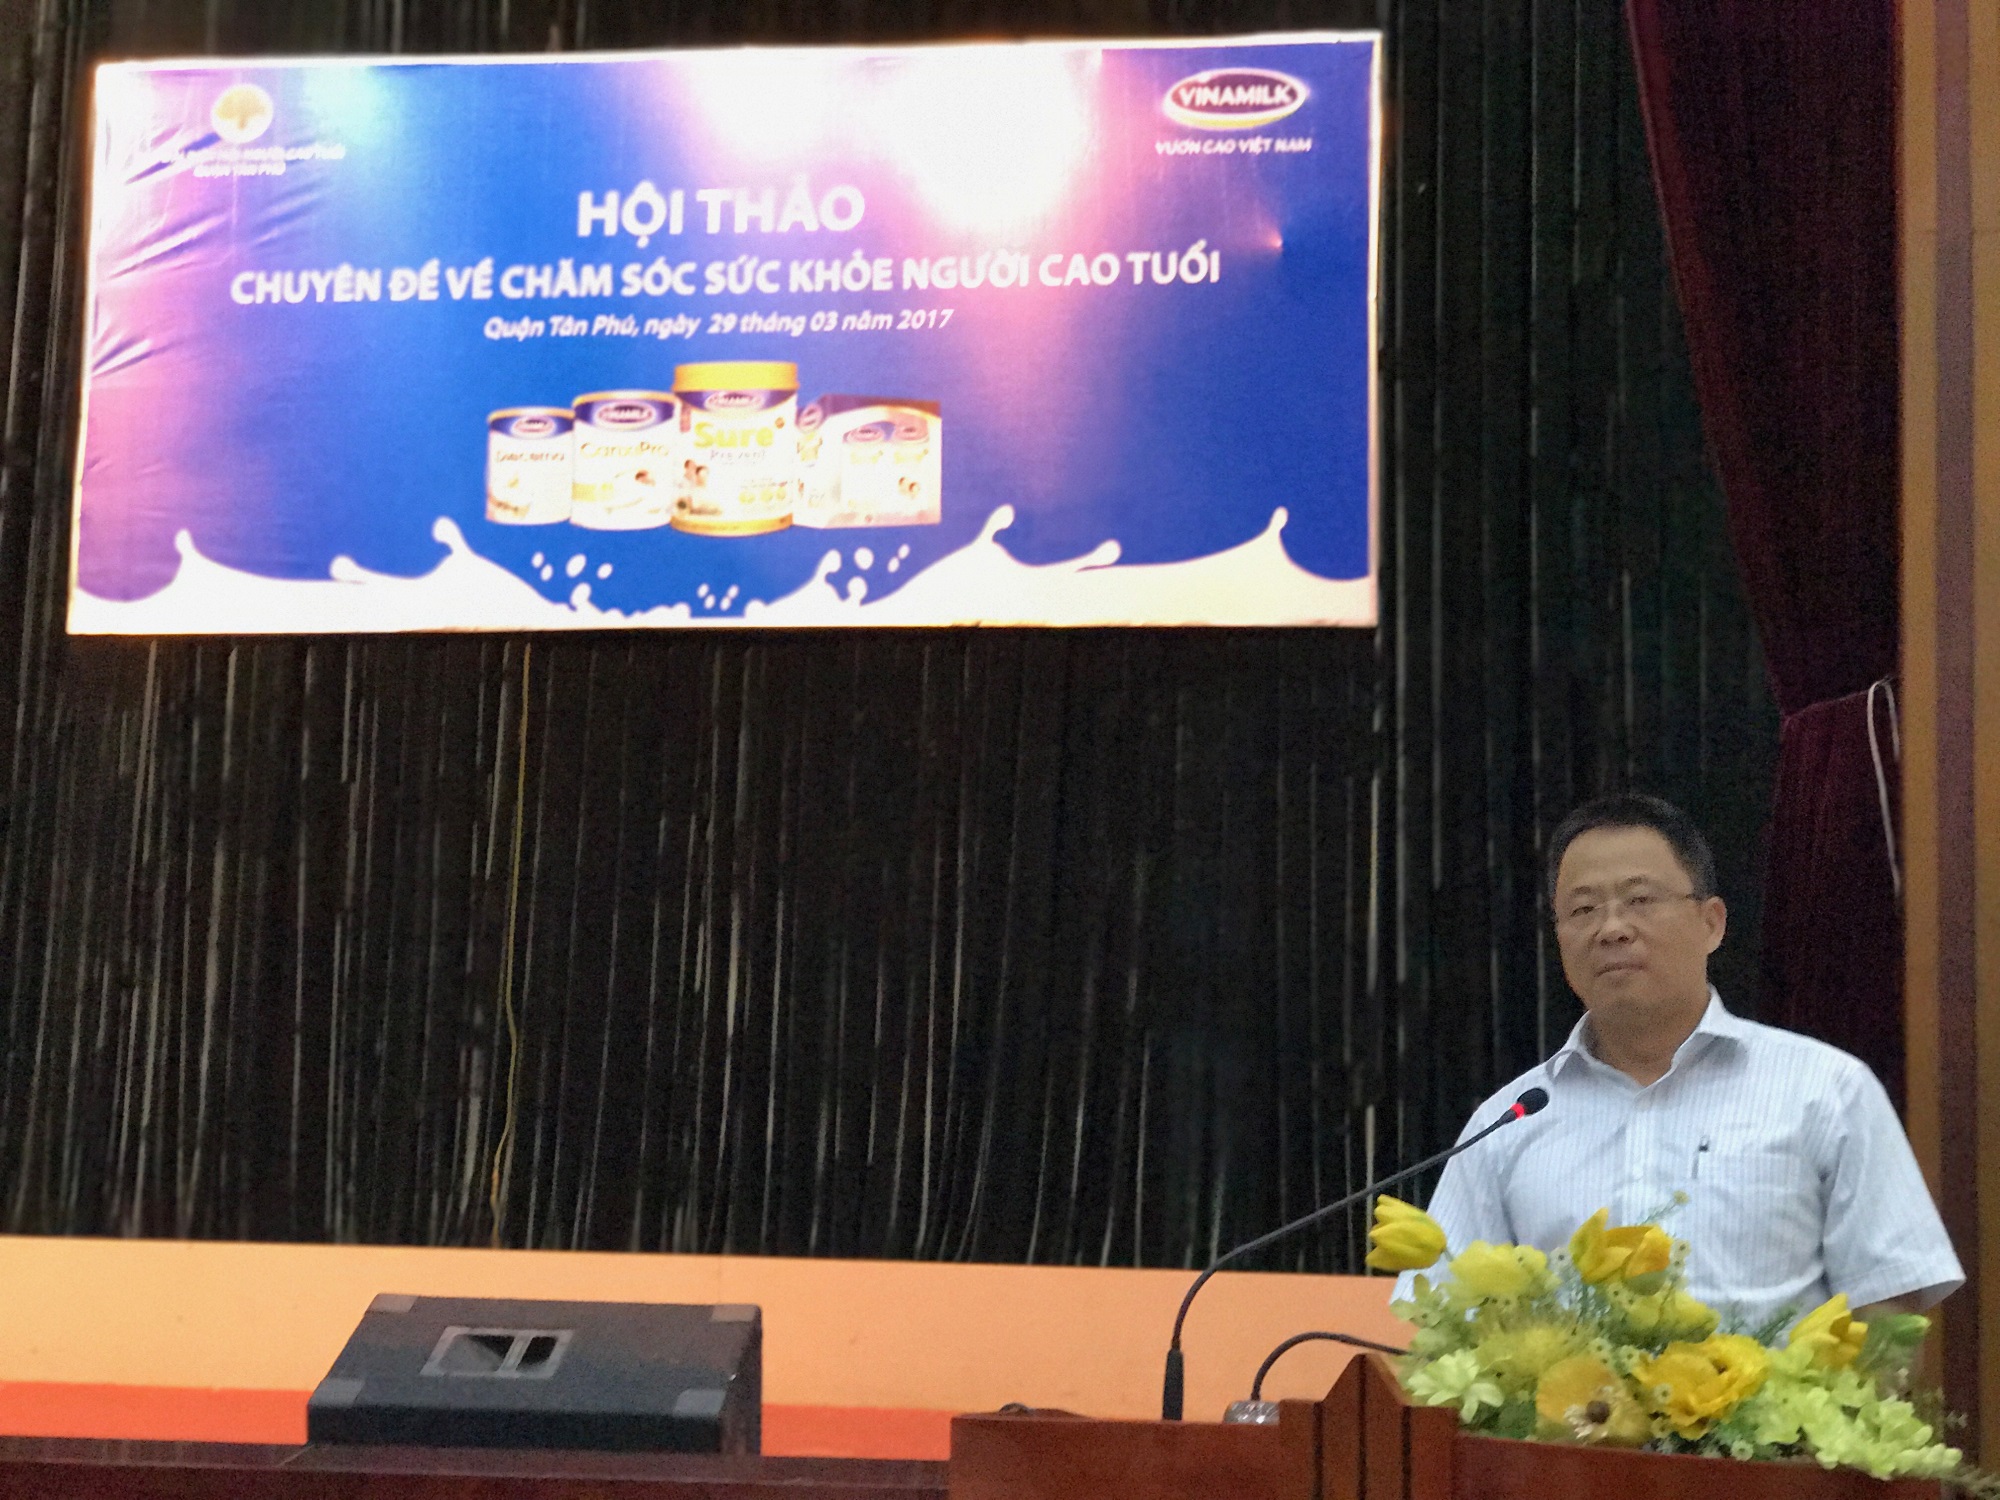 Ông Nguyễn Ngọc Thành - Giám đốc kinh doanh miền TP.HCM Vinamilk phát biểu tại hội thảo ở TP.Hồ Chí Minh